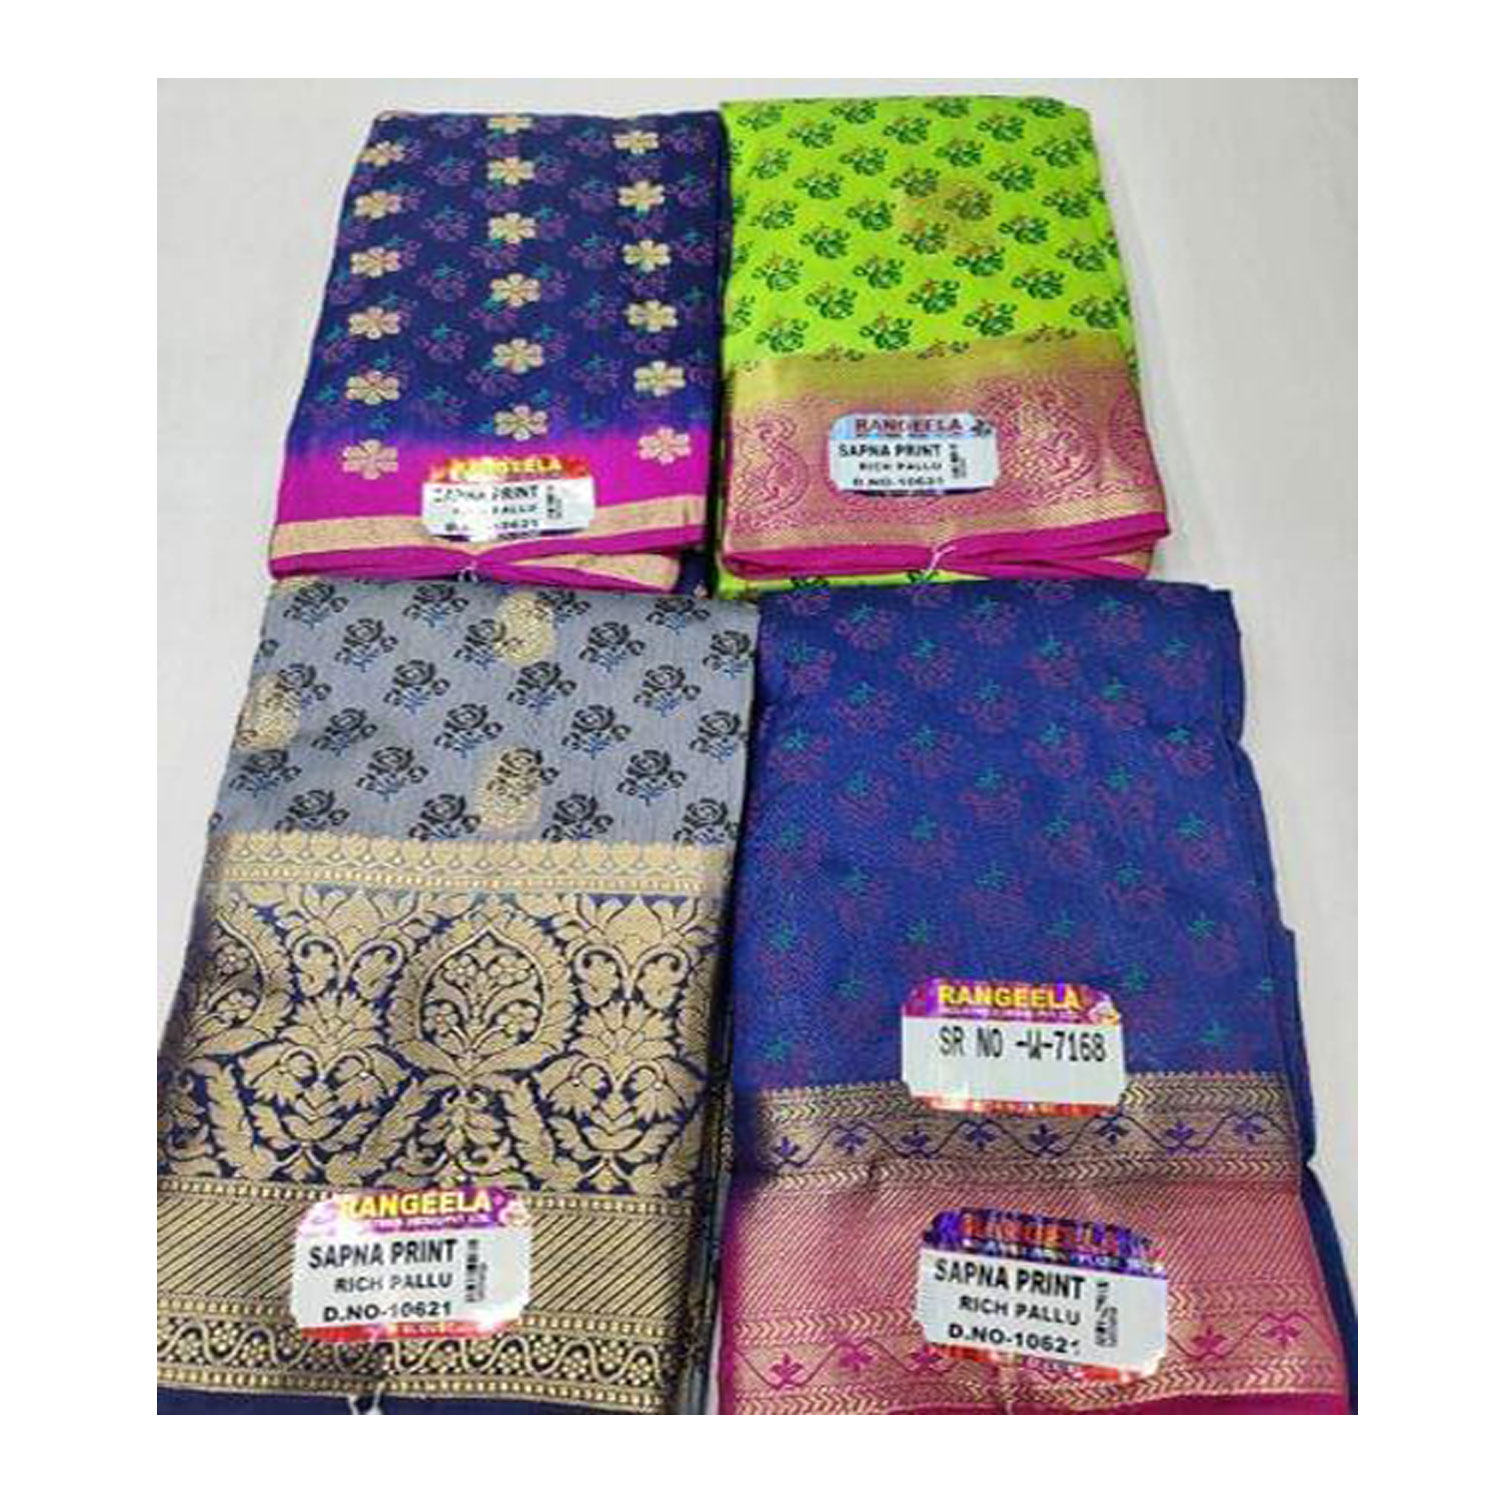  Women's Silk Cotton Weaving Work Sapna Print Saree |D.NO - W-7168| Pack of 4